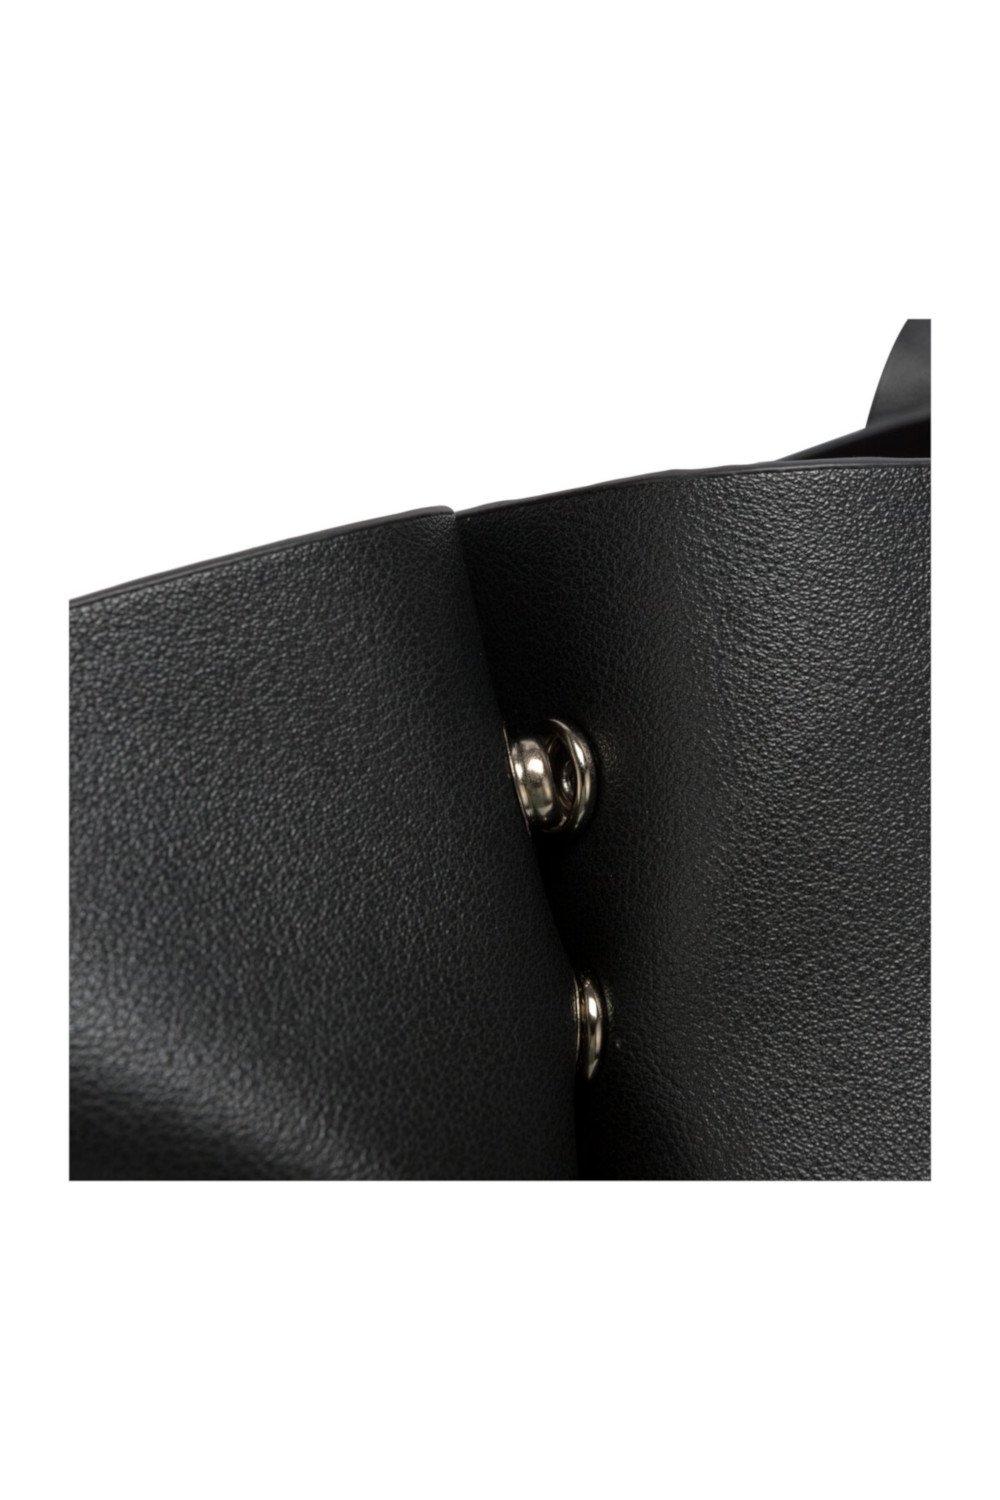 Claudia Canova - single pocket tote bag in black